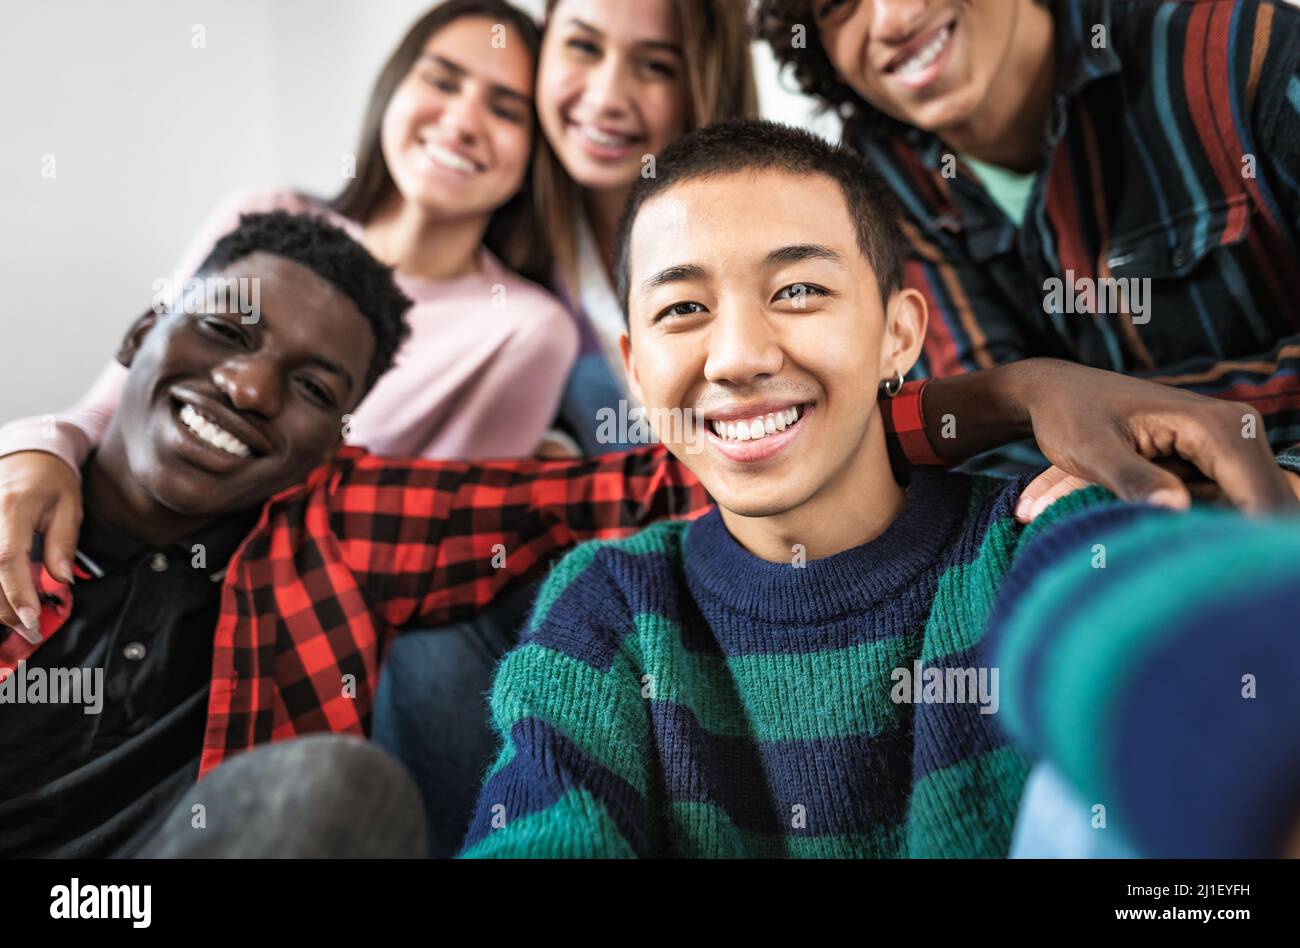 Jeunes amis multiraciaux prenant le selfie ensemble - concept d'amitié et de diversité Banque D'Images